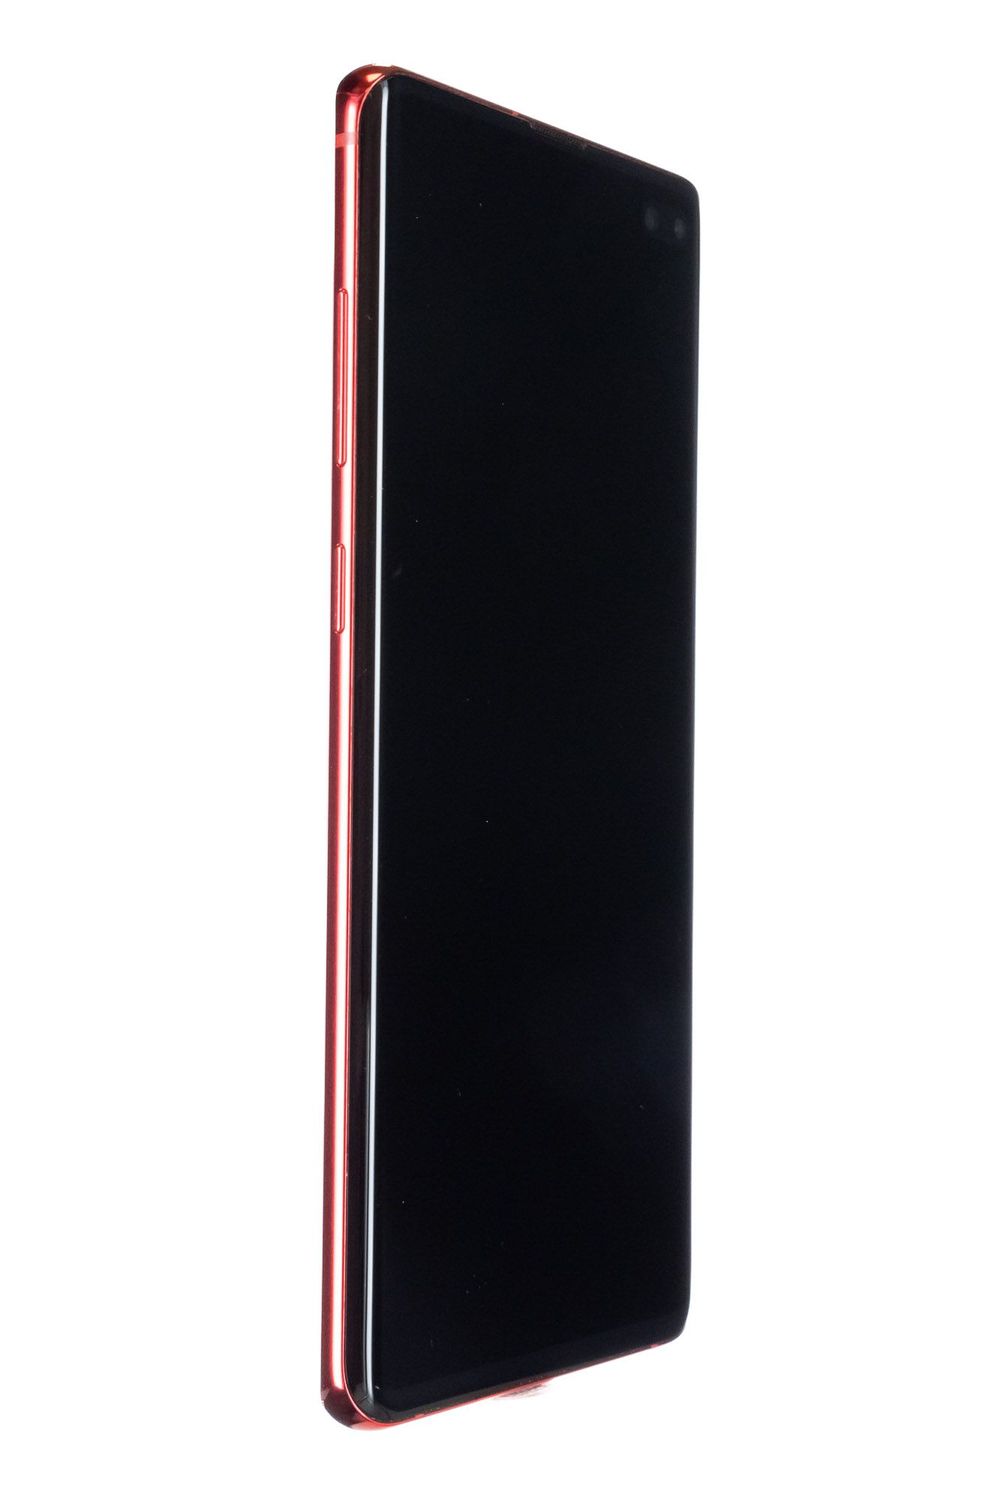 Κινητό τηλέφωνο Samsung Galaxy S10 Plus, Cardinal Red, 128 GB, Foarte Bun